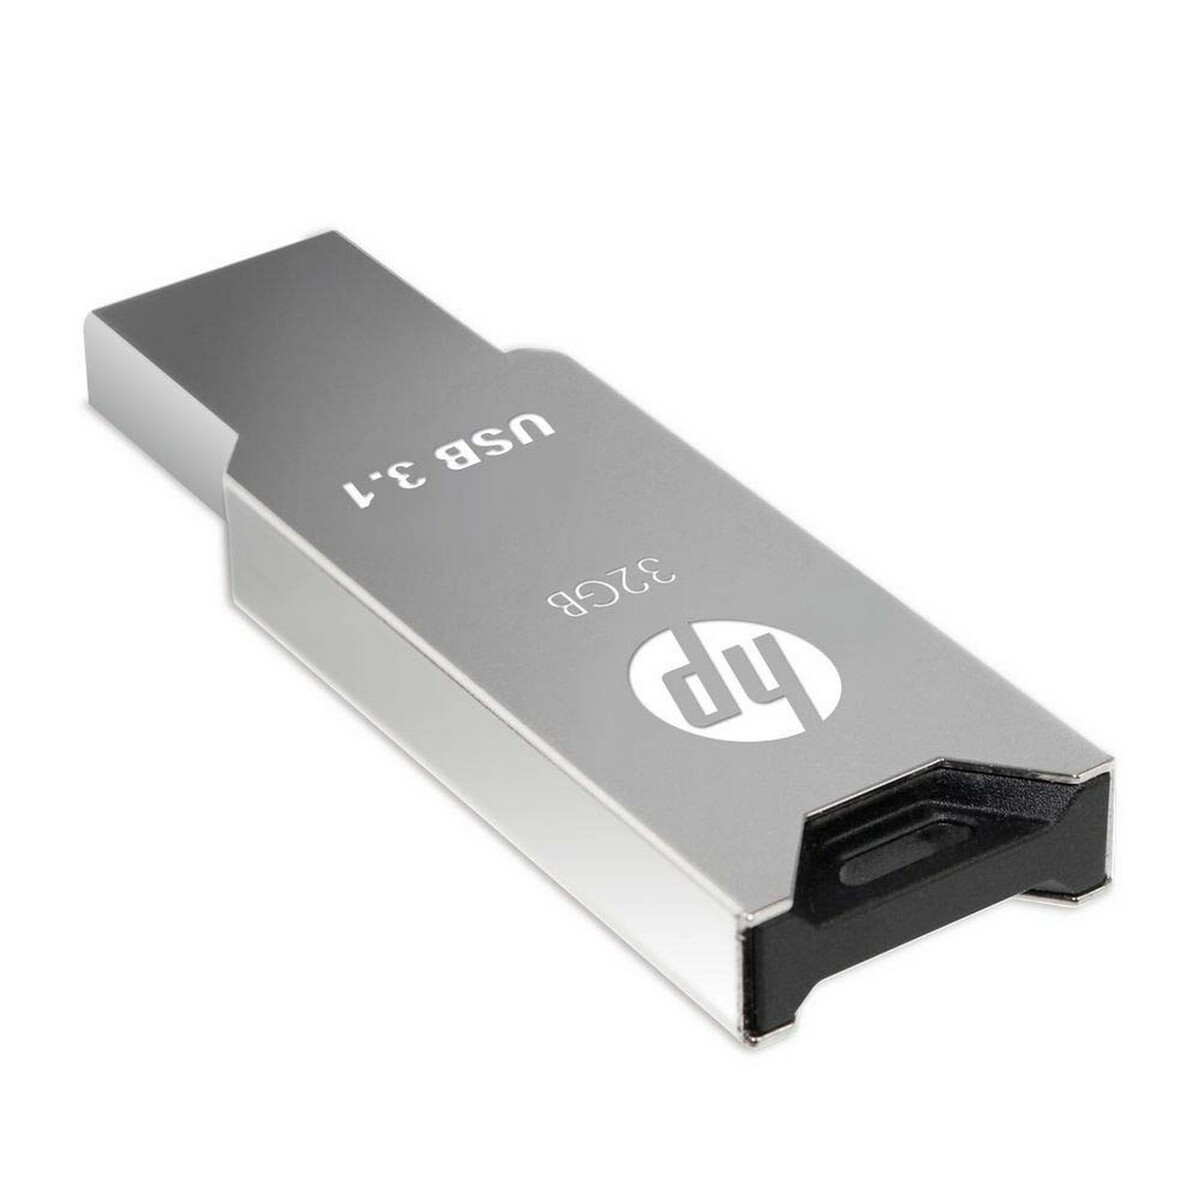 HP Flash Drive USB 3.0 303W 32GB